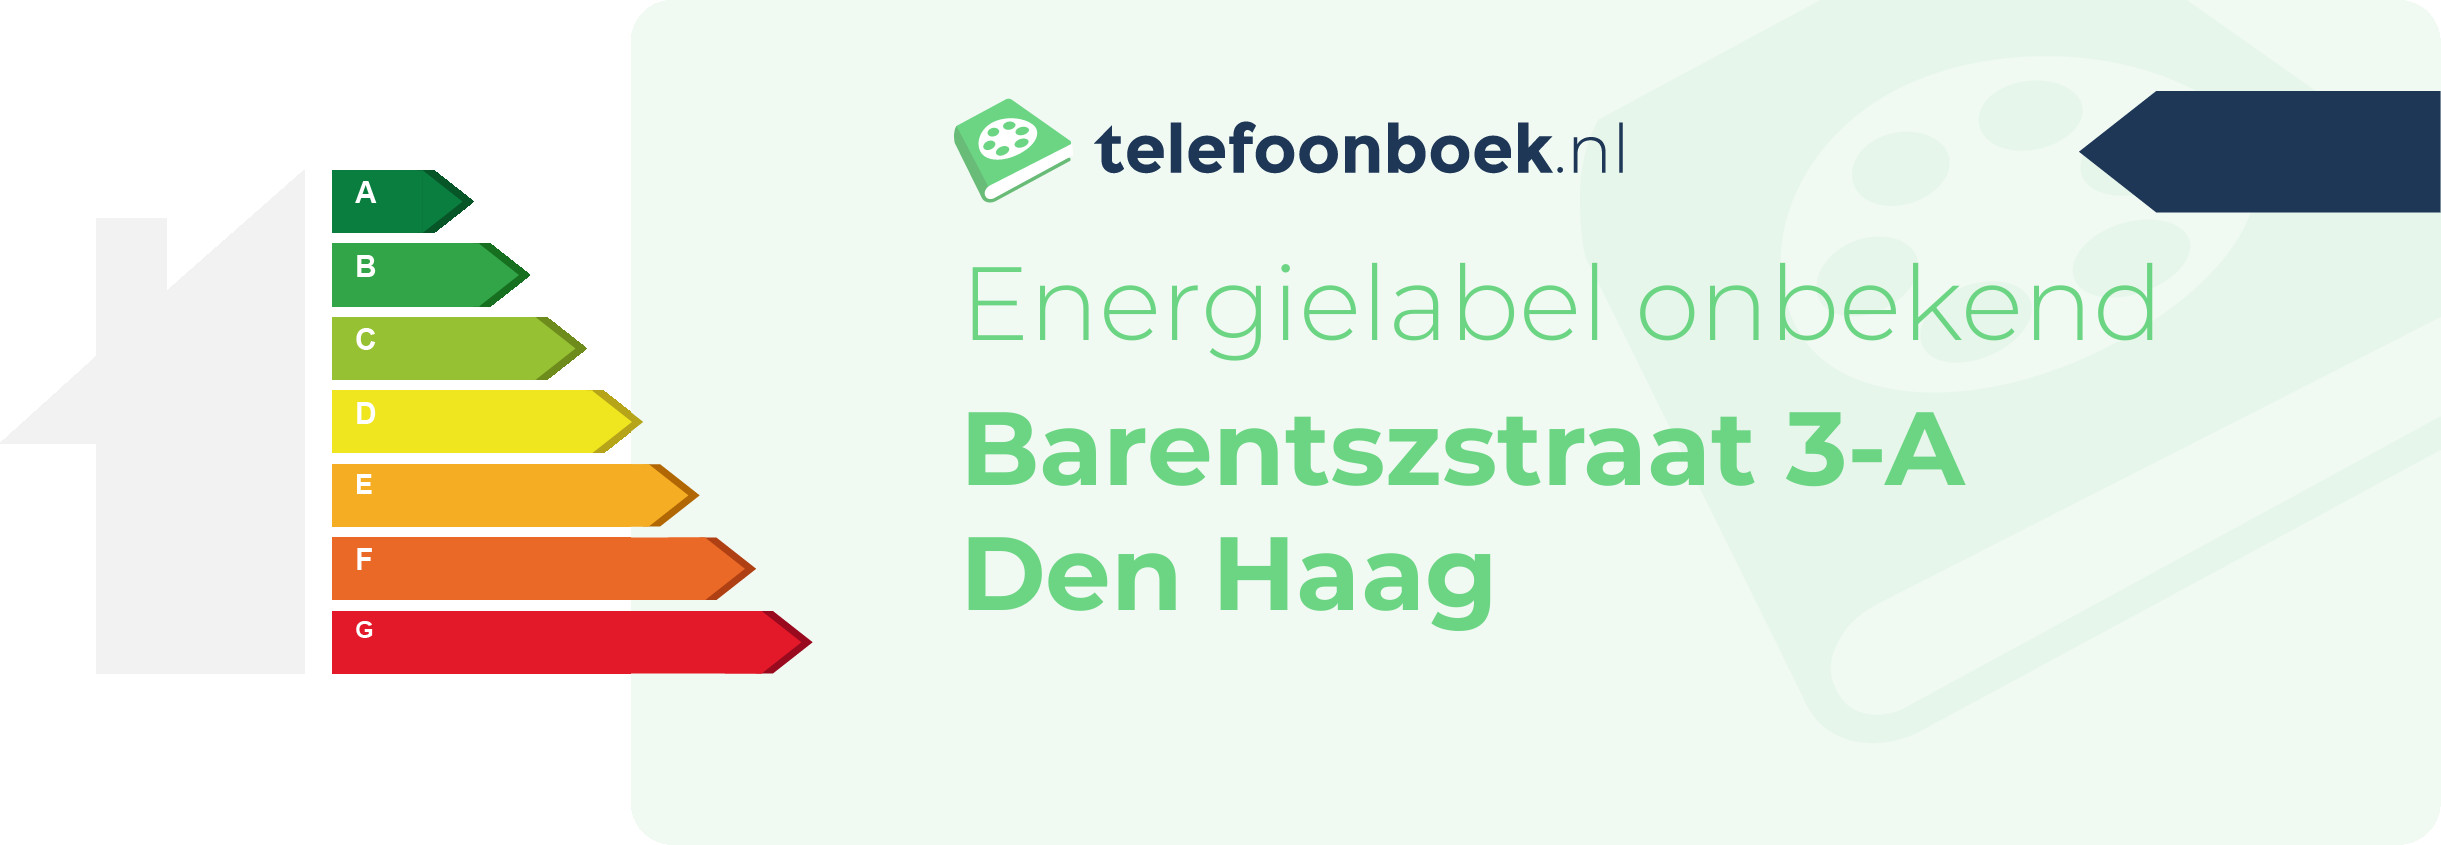 Energielabel Barentszstraat 3-A Den Haag